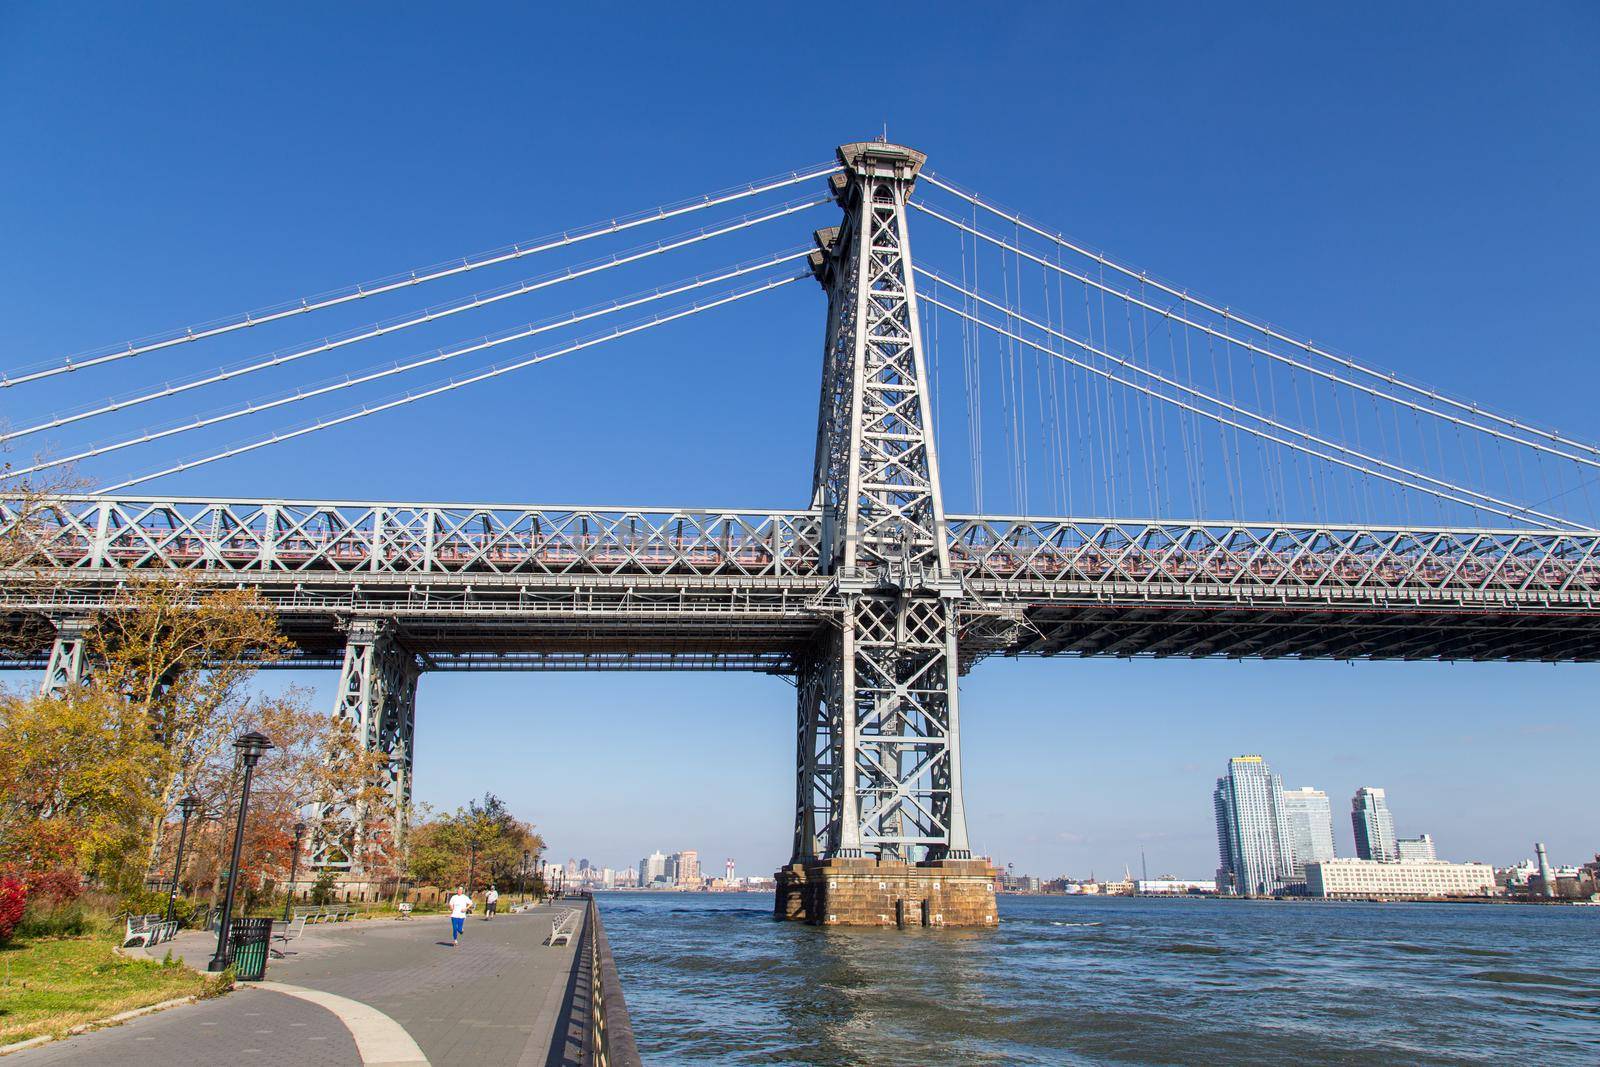 New York City, United States - November 17, 2016: One of the pillars of Williamsburg Bridge in Manhattan